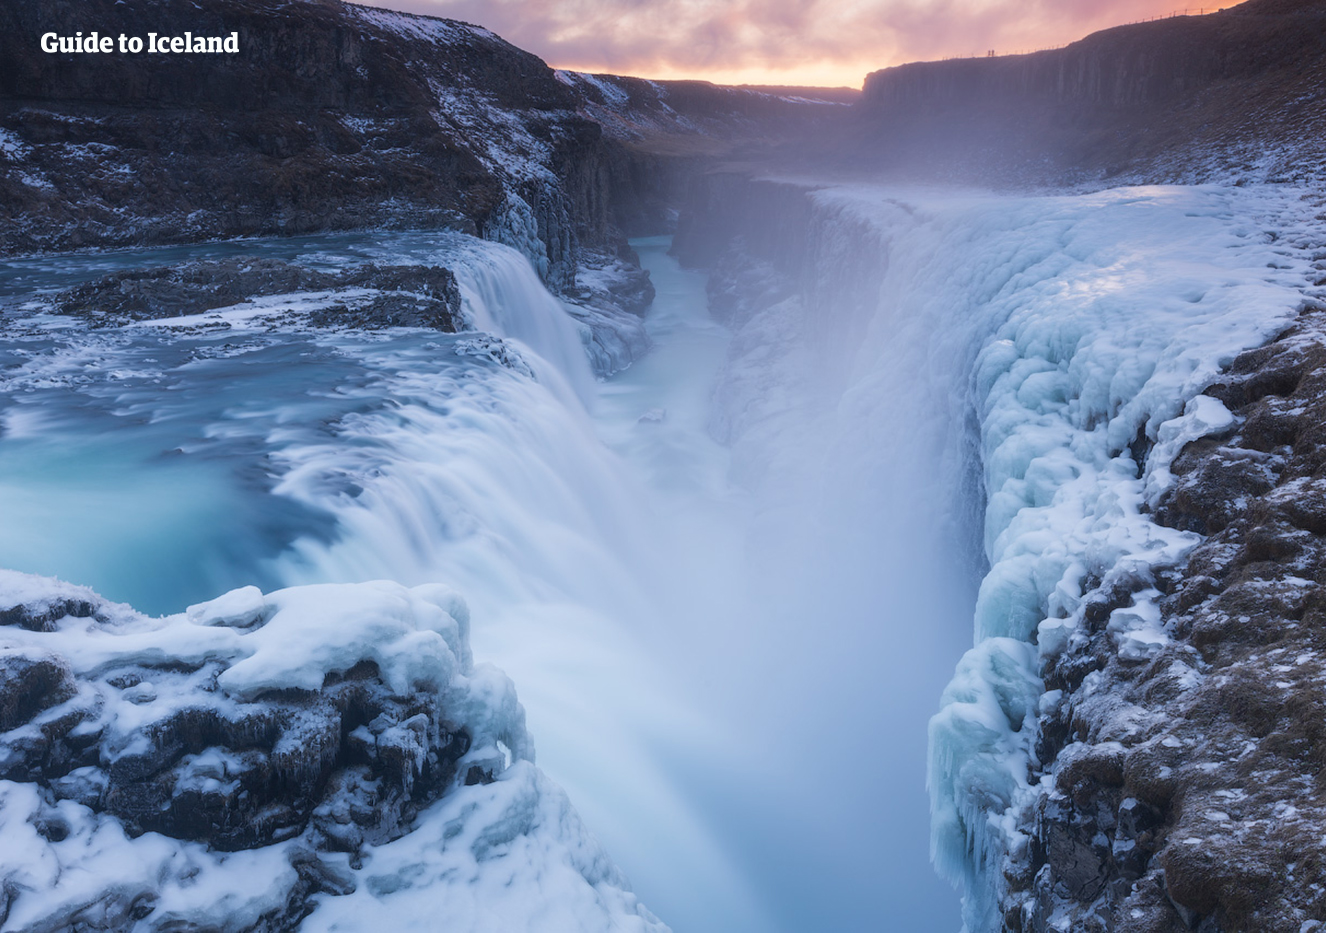 La possente cascata di Gullfoss è sbalorditiva e i paesaggi ghiacciati circostanti non fanno che aumentarne il fascino